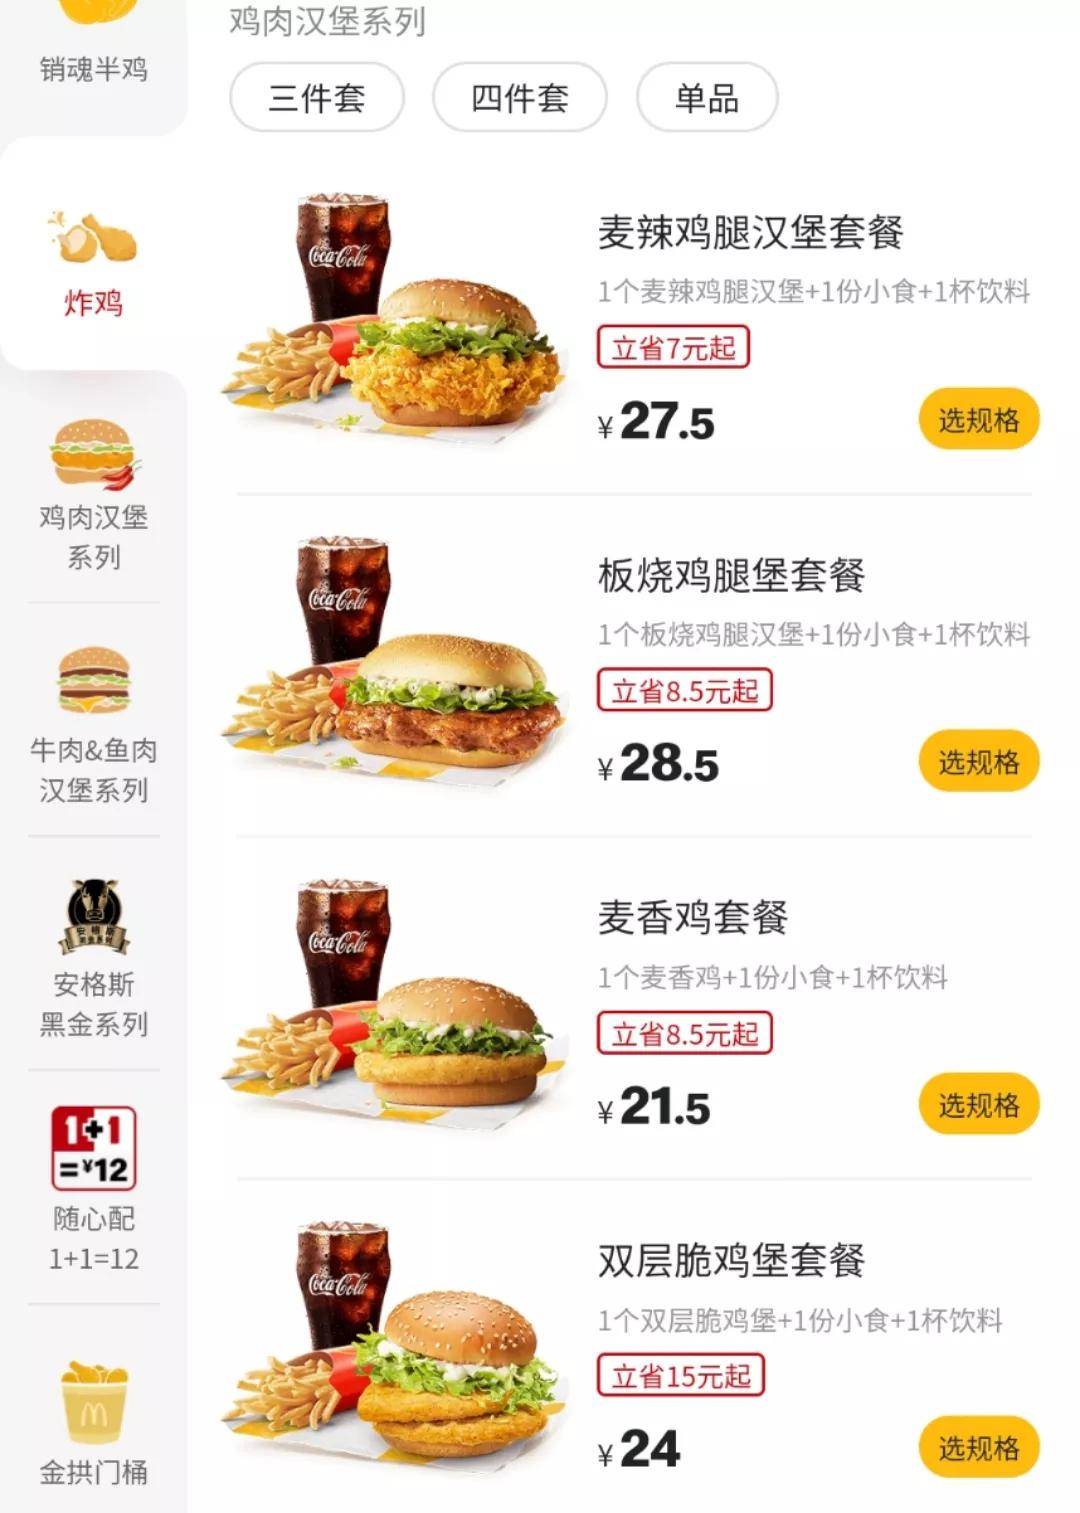 总体来说,麦当劳在中国的价格策略还是低价营销. 有人会听说过这样